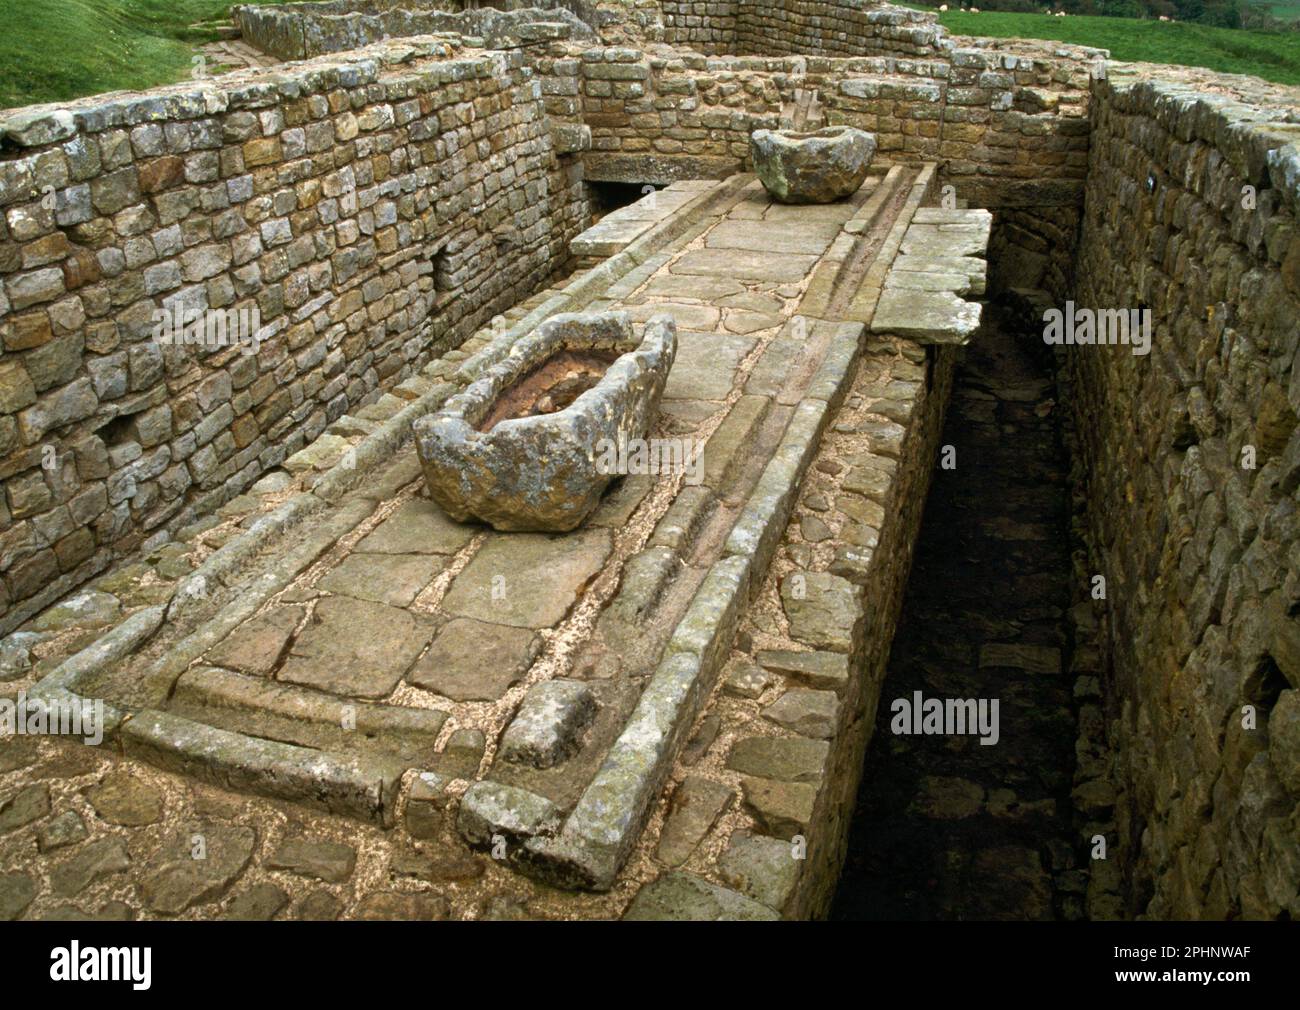 Latrinen, Wasserkanäle, Becken und Abflüsse in der südöstlichen Ecke des römischen Forts Housesteads, Hadrian's Wall, Northumberland, England, Großbritannien. Stockfoto